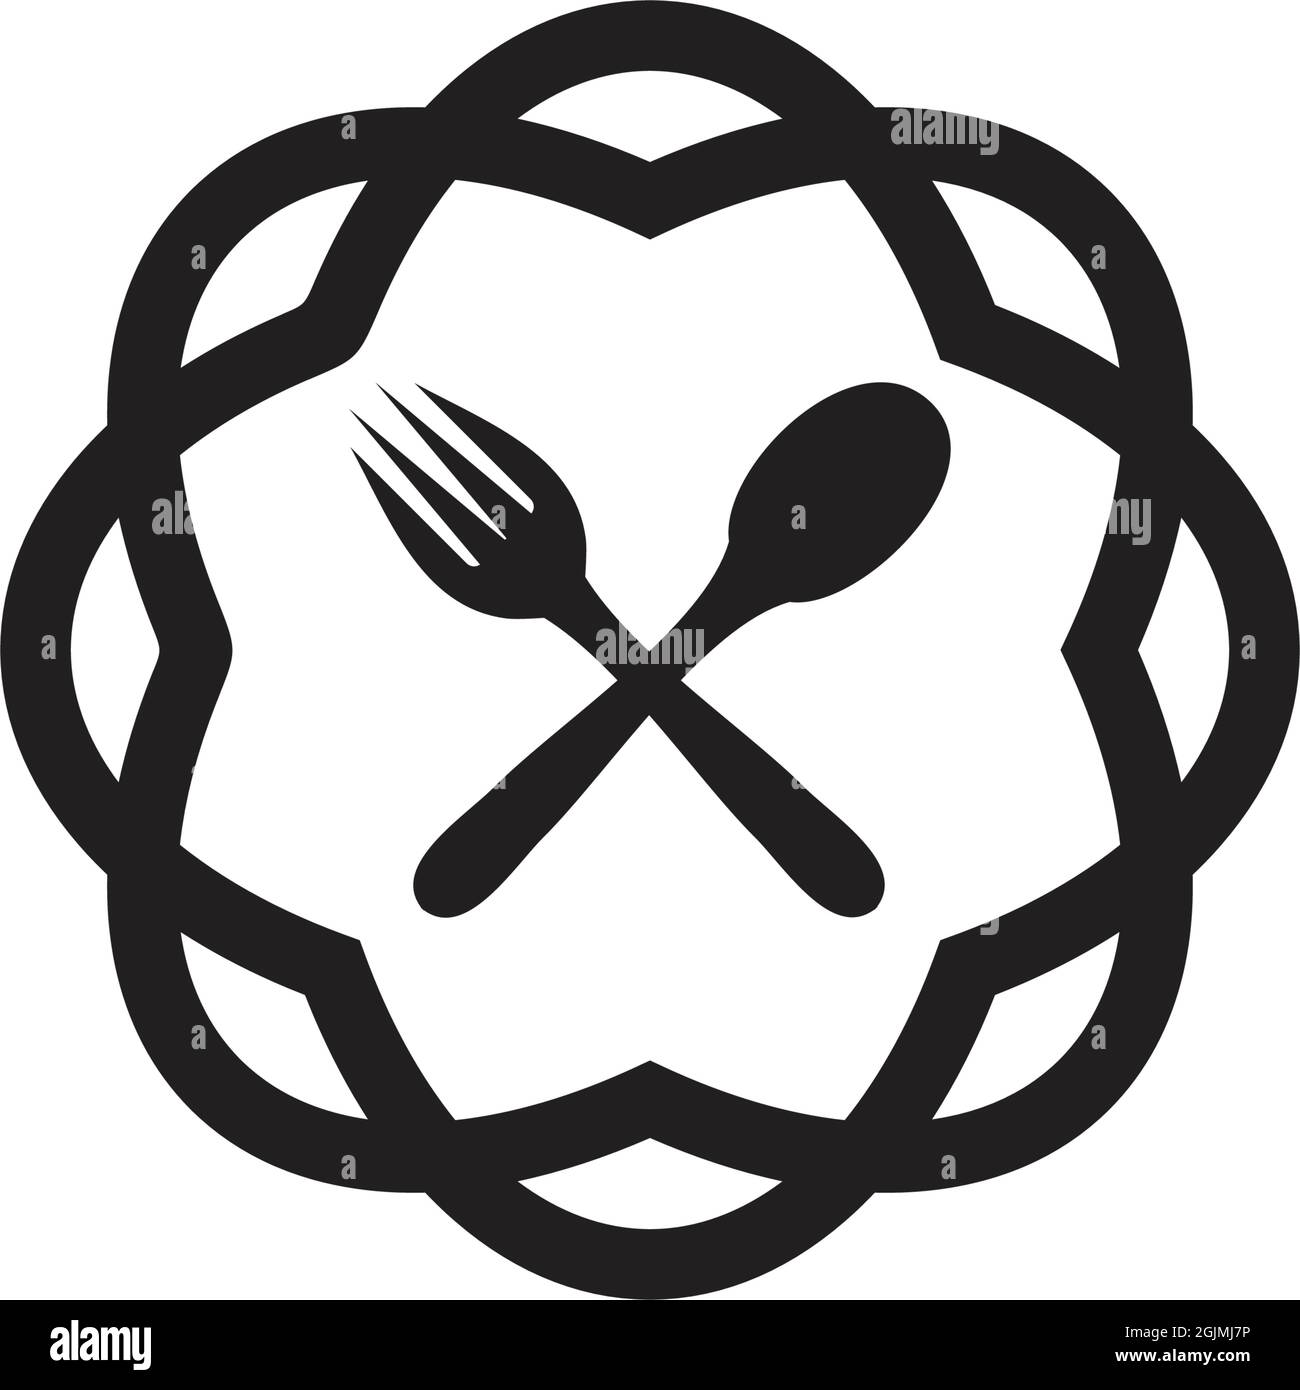 Restaurant logo design inspiration concept vector template Stock Vector